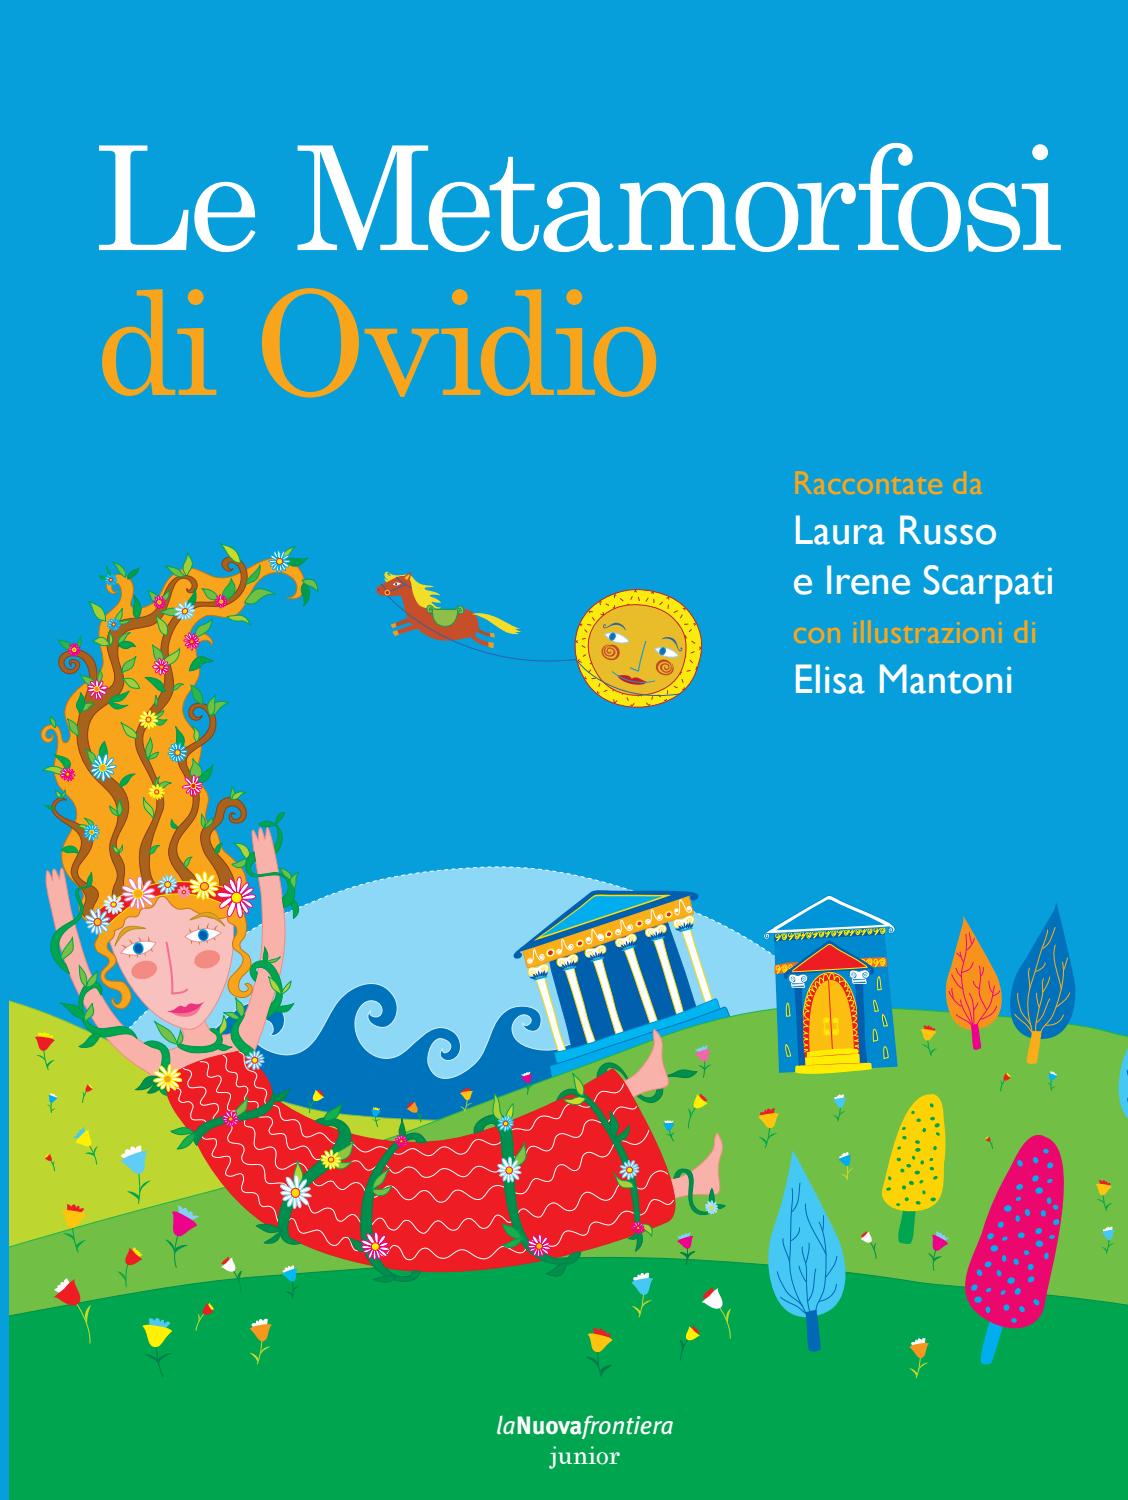 Le Metamorfosi di Ovidio